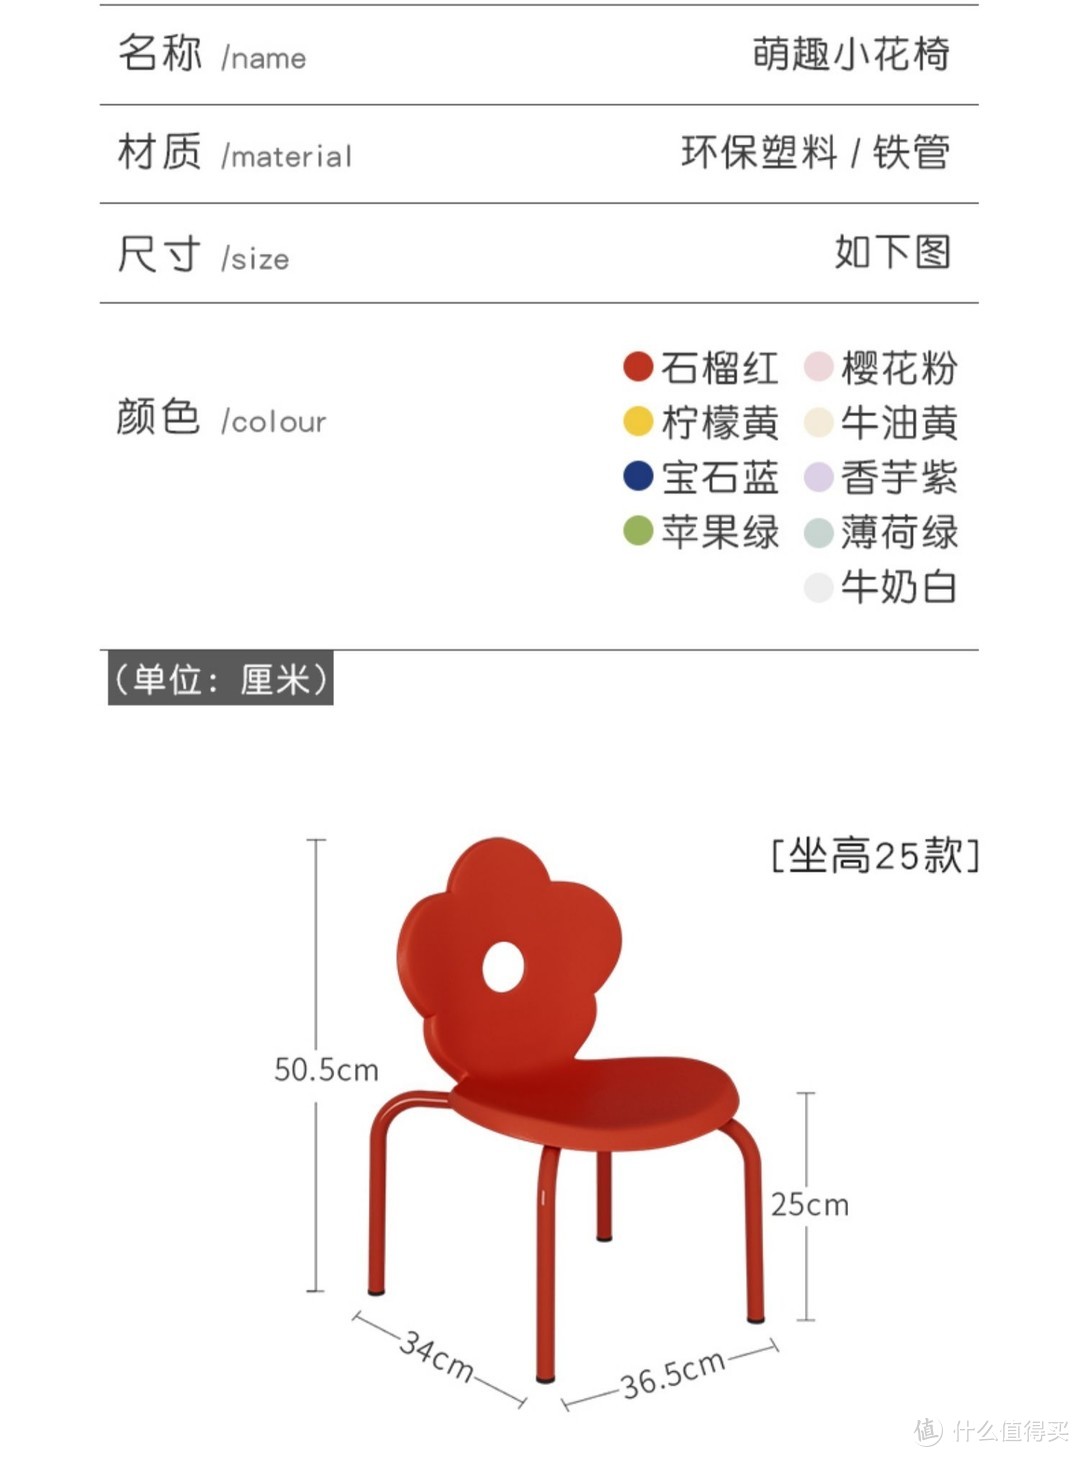 宝宝座椅怎么选618好用的儿童家庭座椅推荐塑料凳子篇